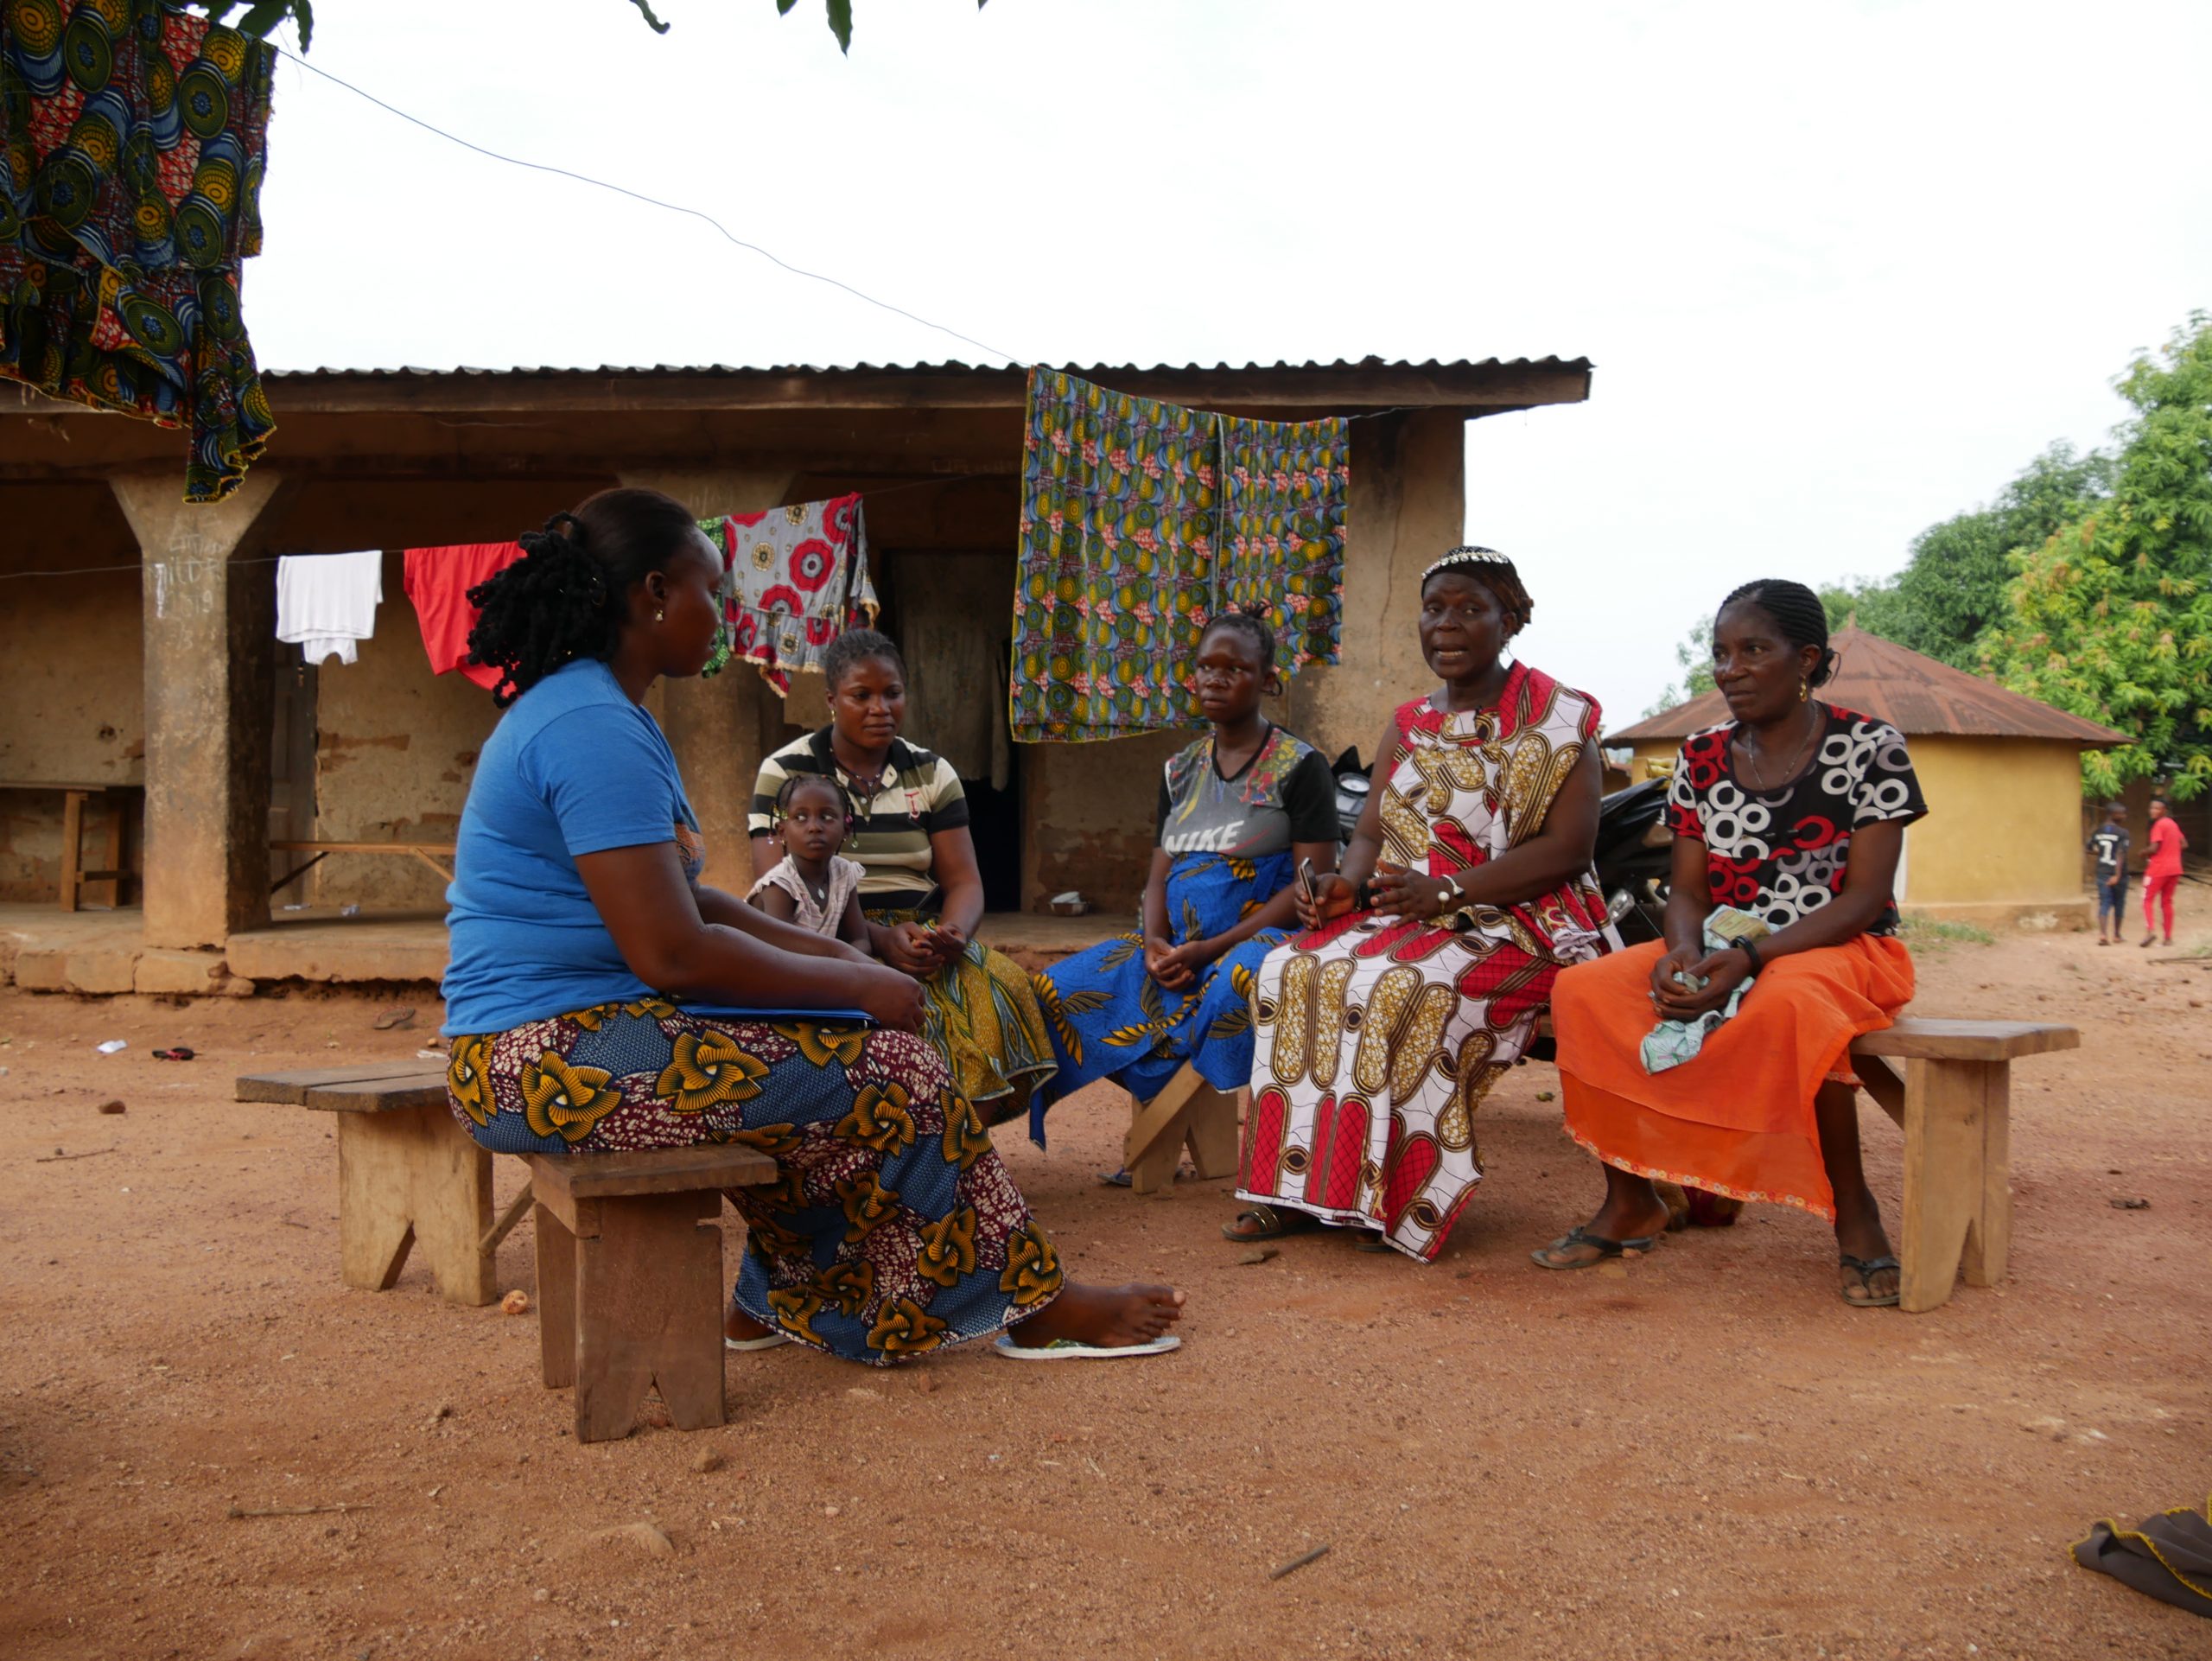 Riposte à Ébola : des relais communautaires engagés pour le retour des femmes dans les structures de santé à N’zérékoré